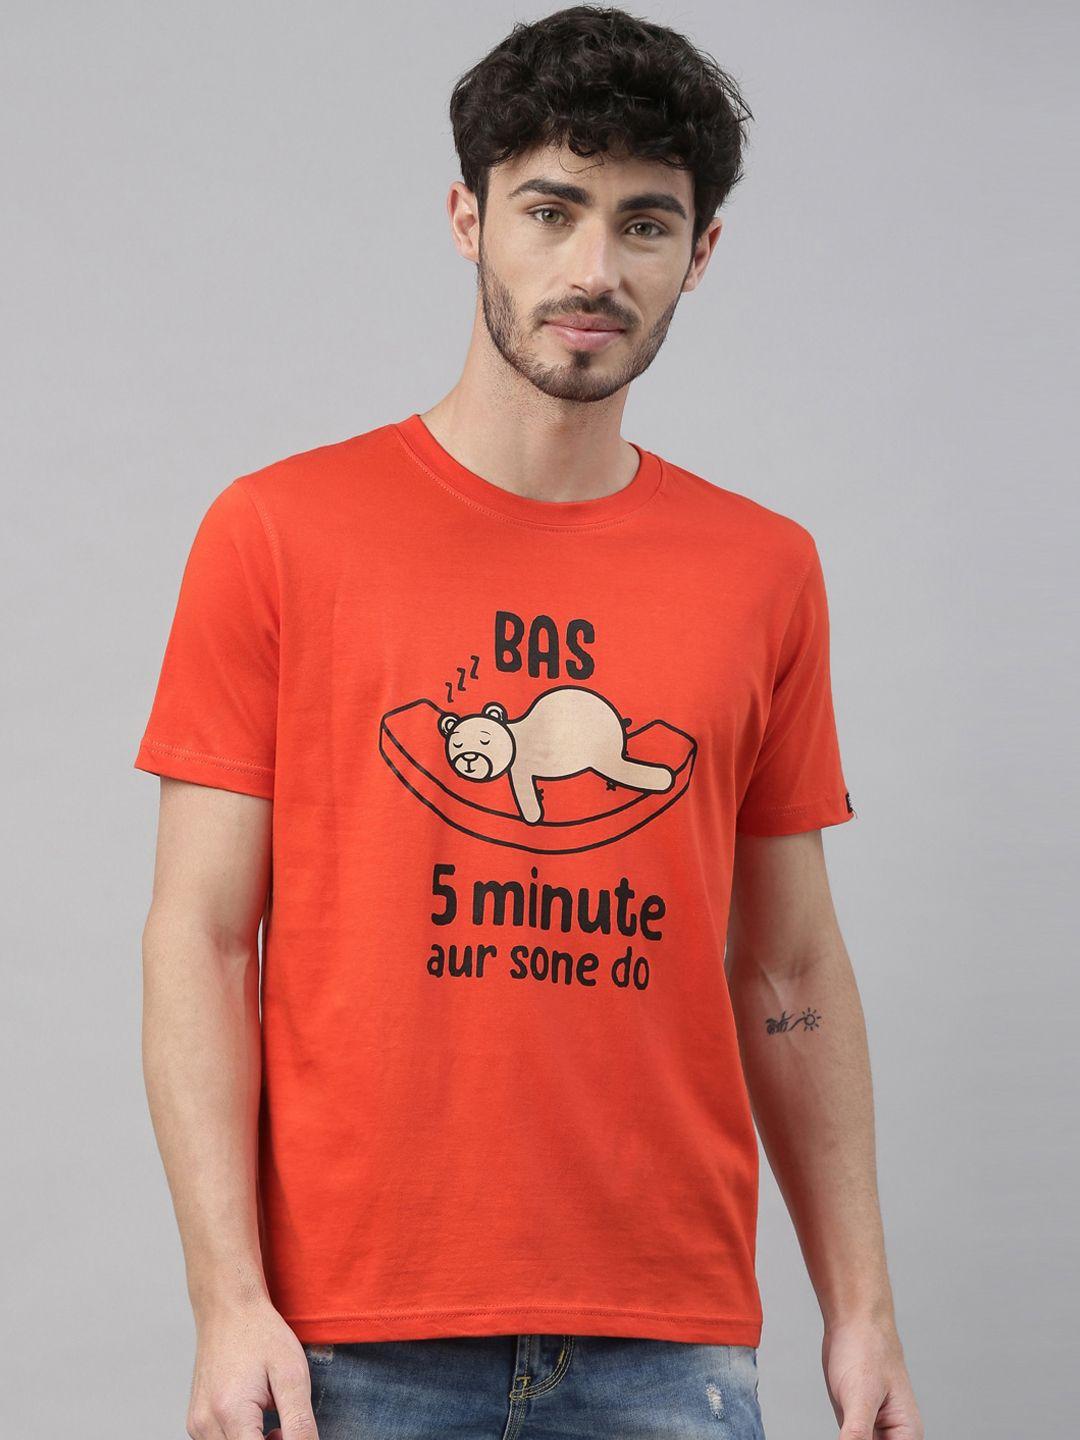 bushirt men orange printed round neck t-shirt